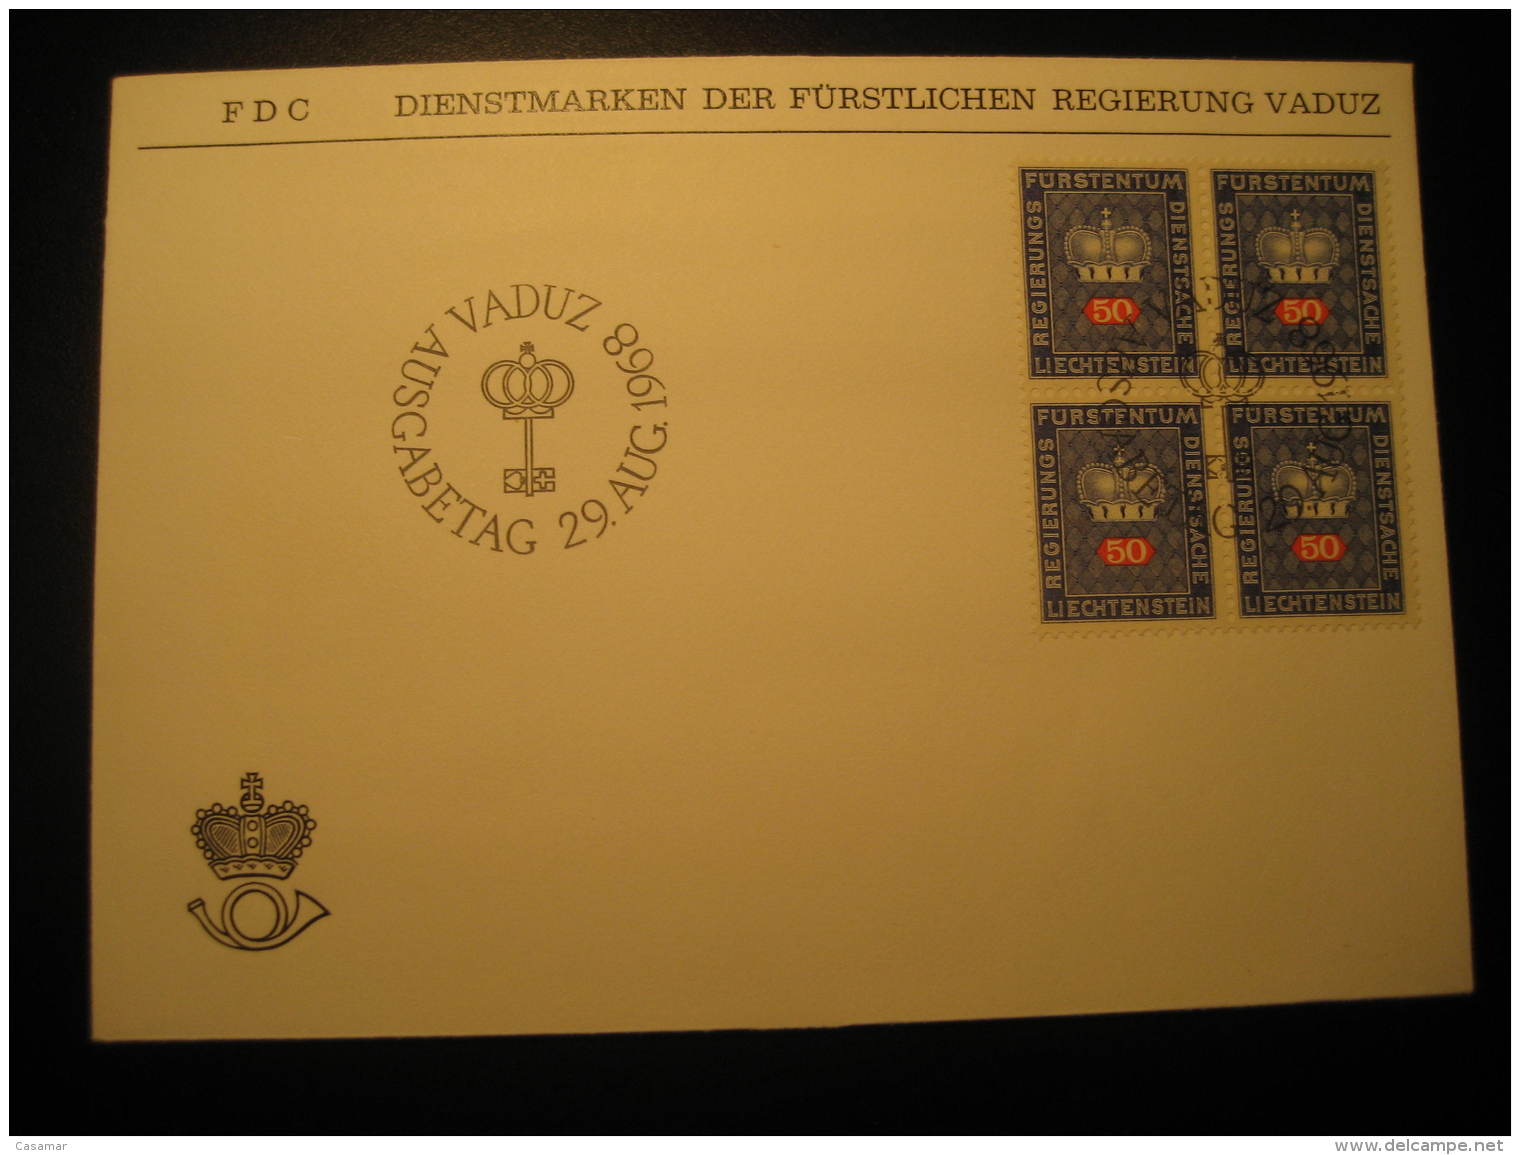 VADUZ 1968 FDC Block Of 4 Service Official Stamp Cancel Cover Liechtenstein Dienstsache - Service